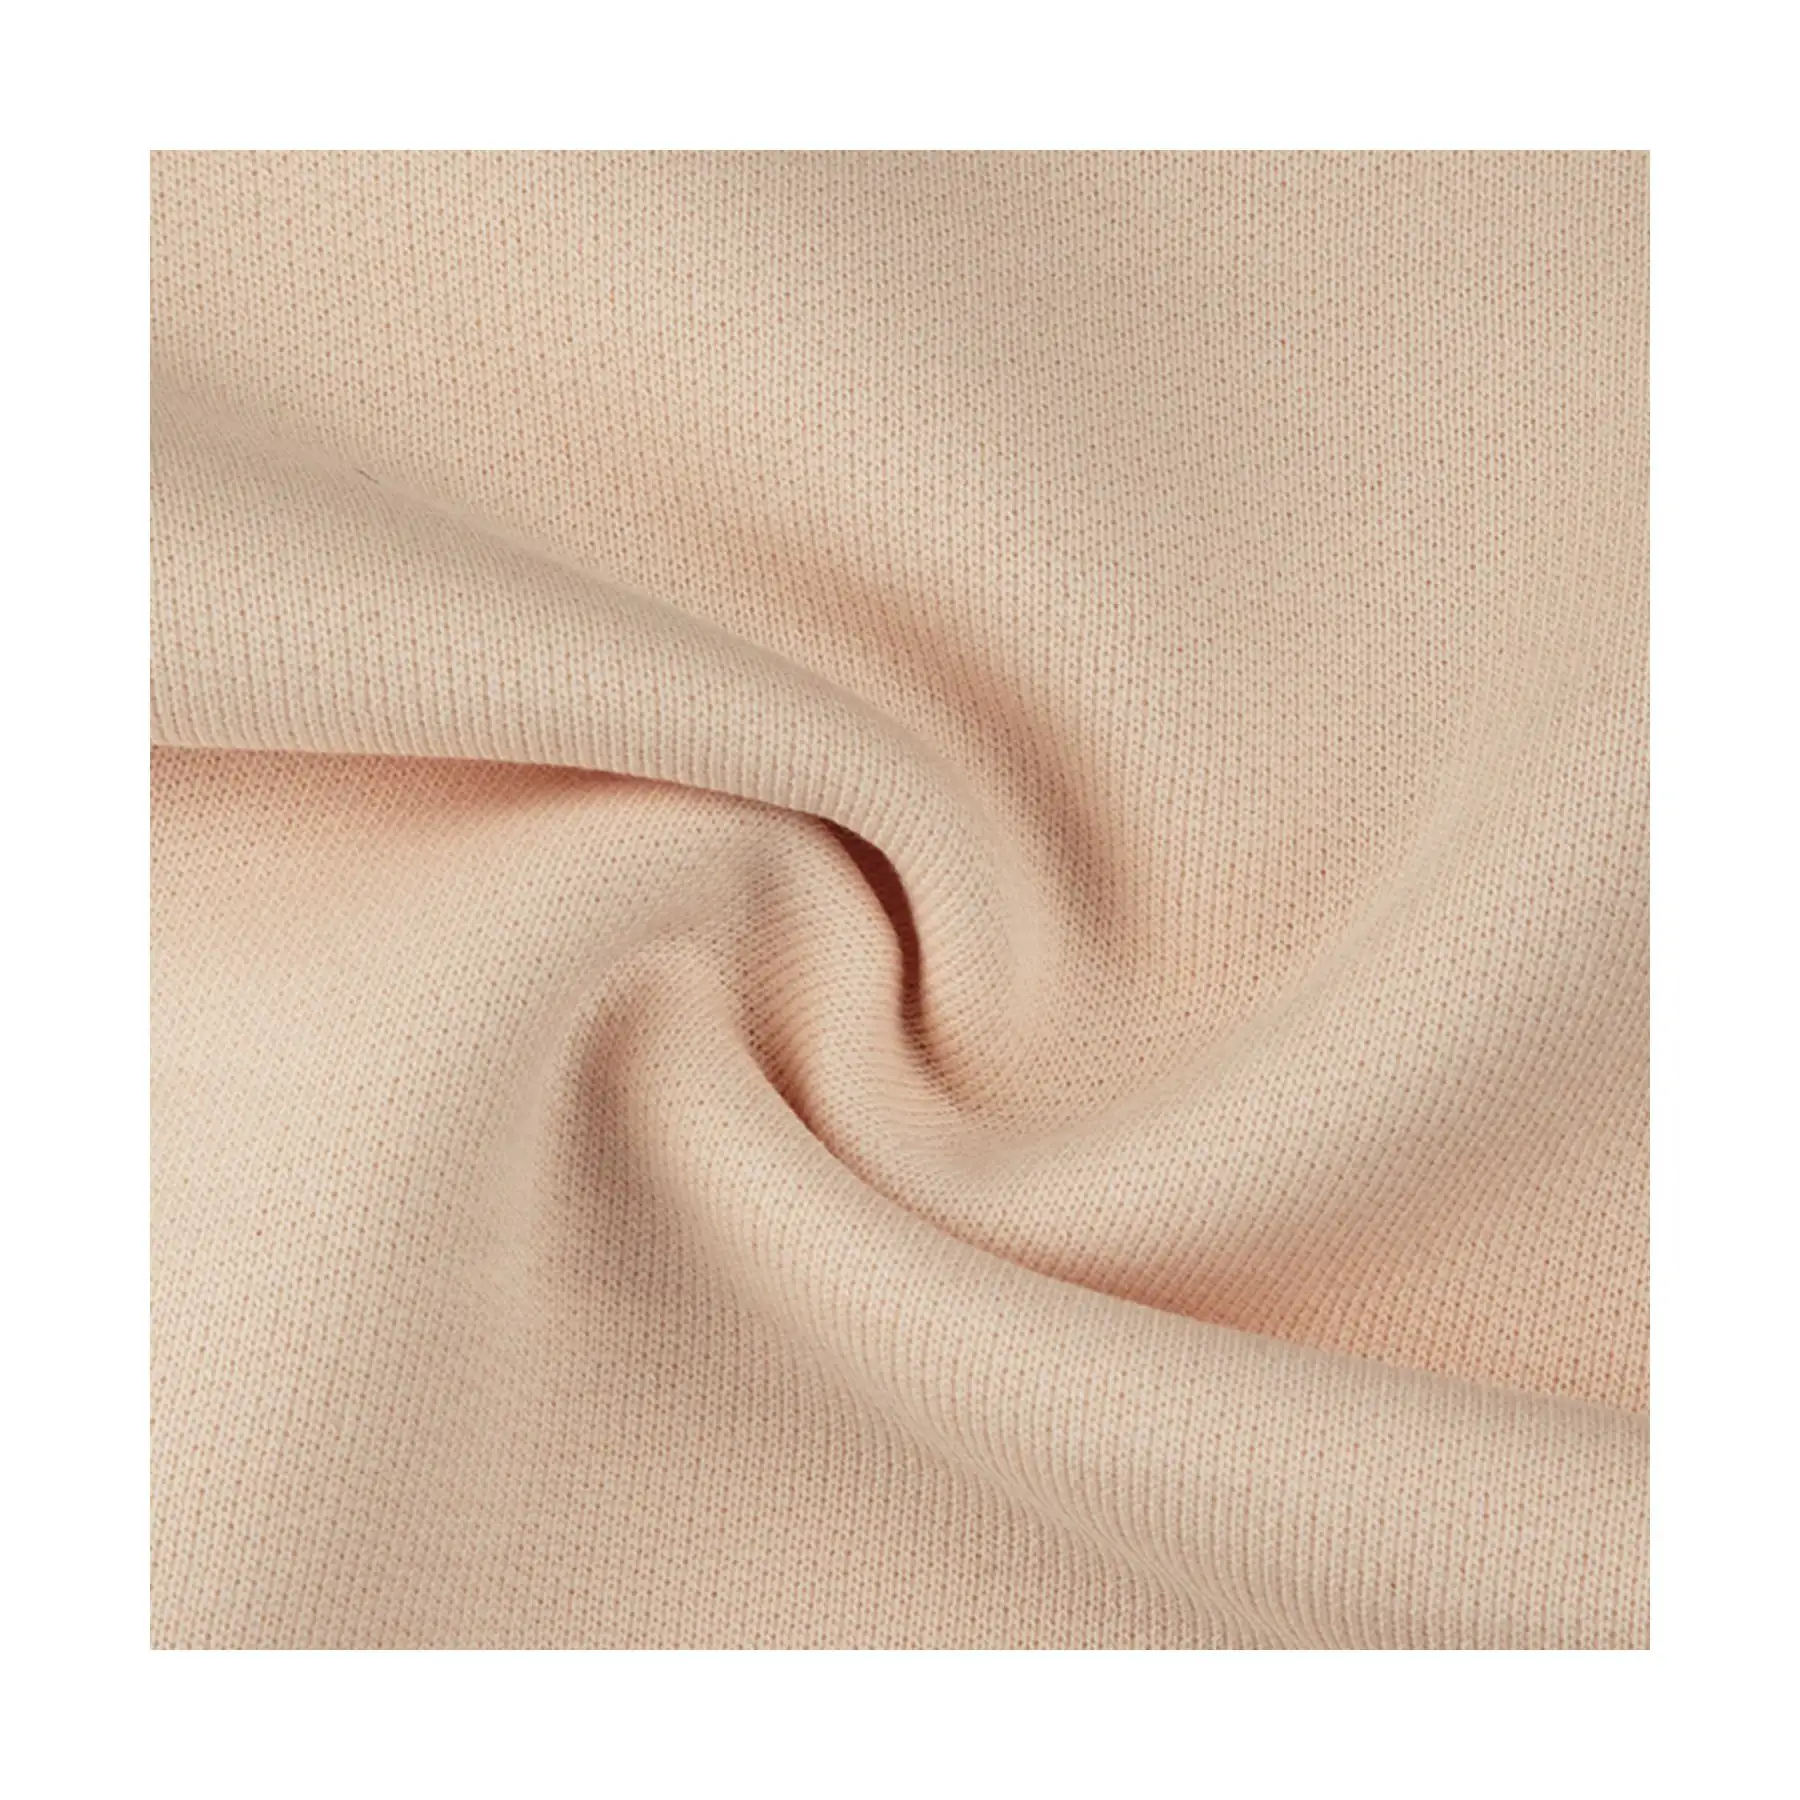 Meilleur produit Sweat-shirt en coton lourd-Chaleur et confort fiables-Essentiel pour votre garde-robe